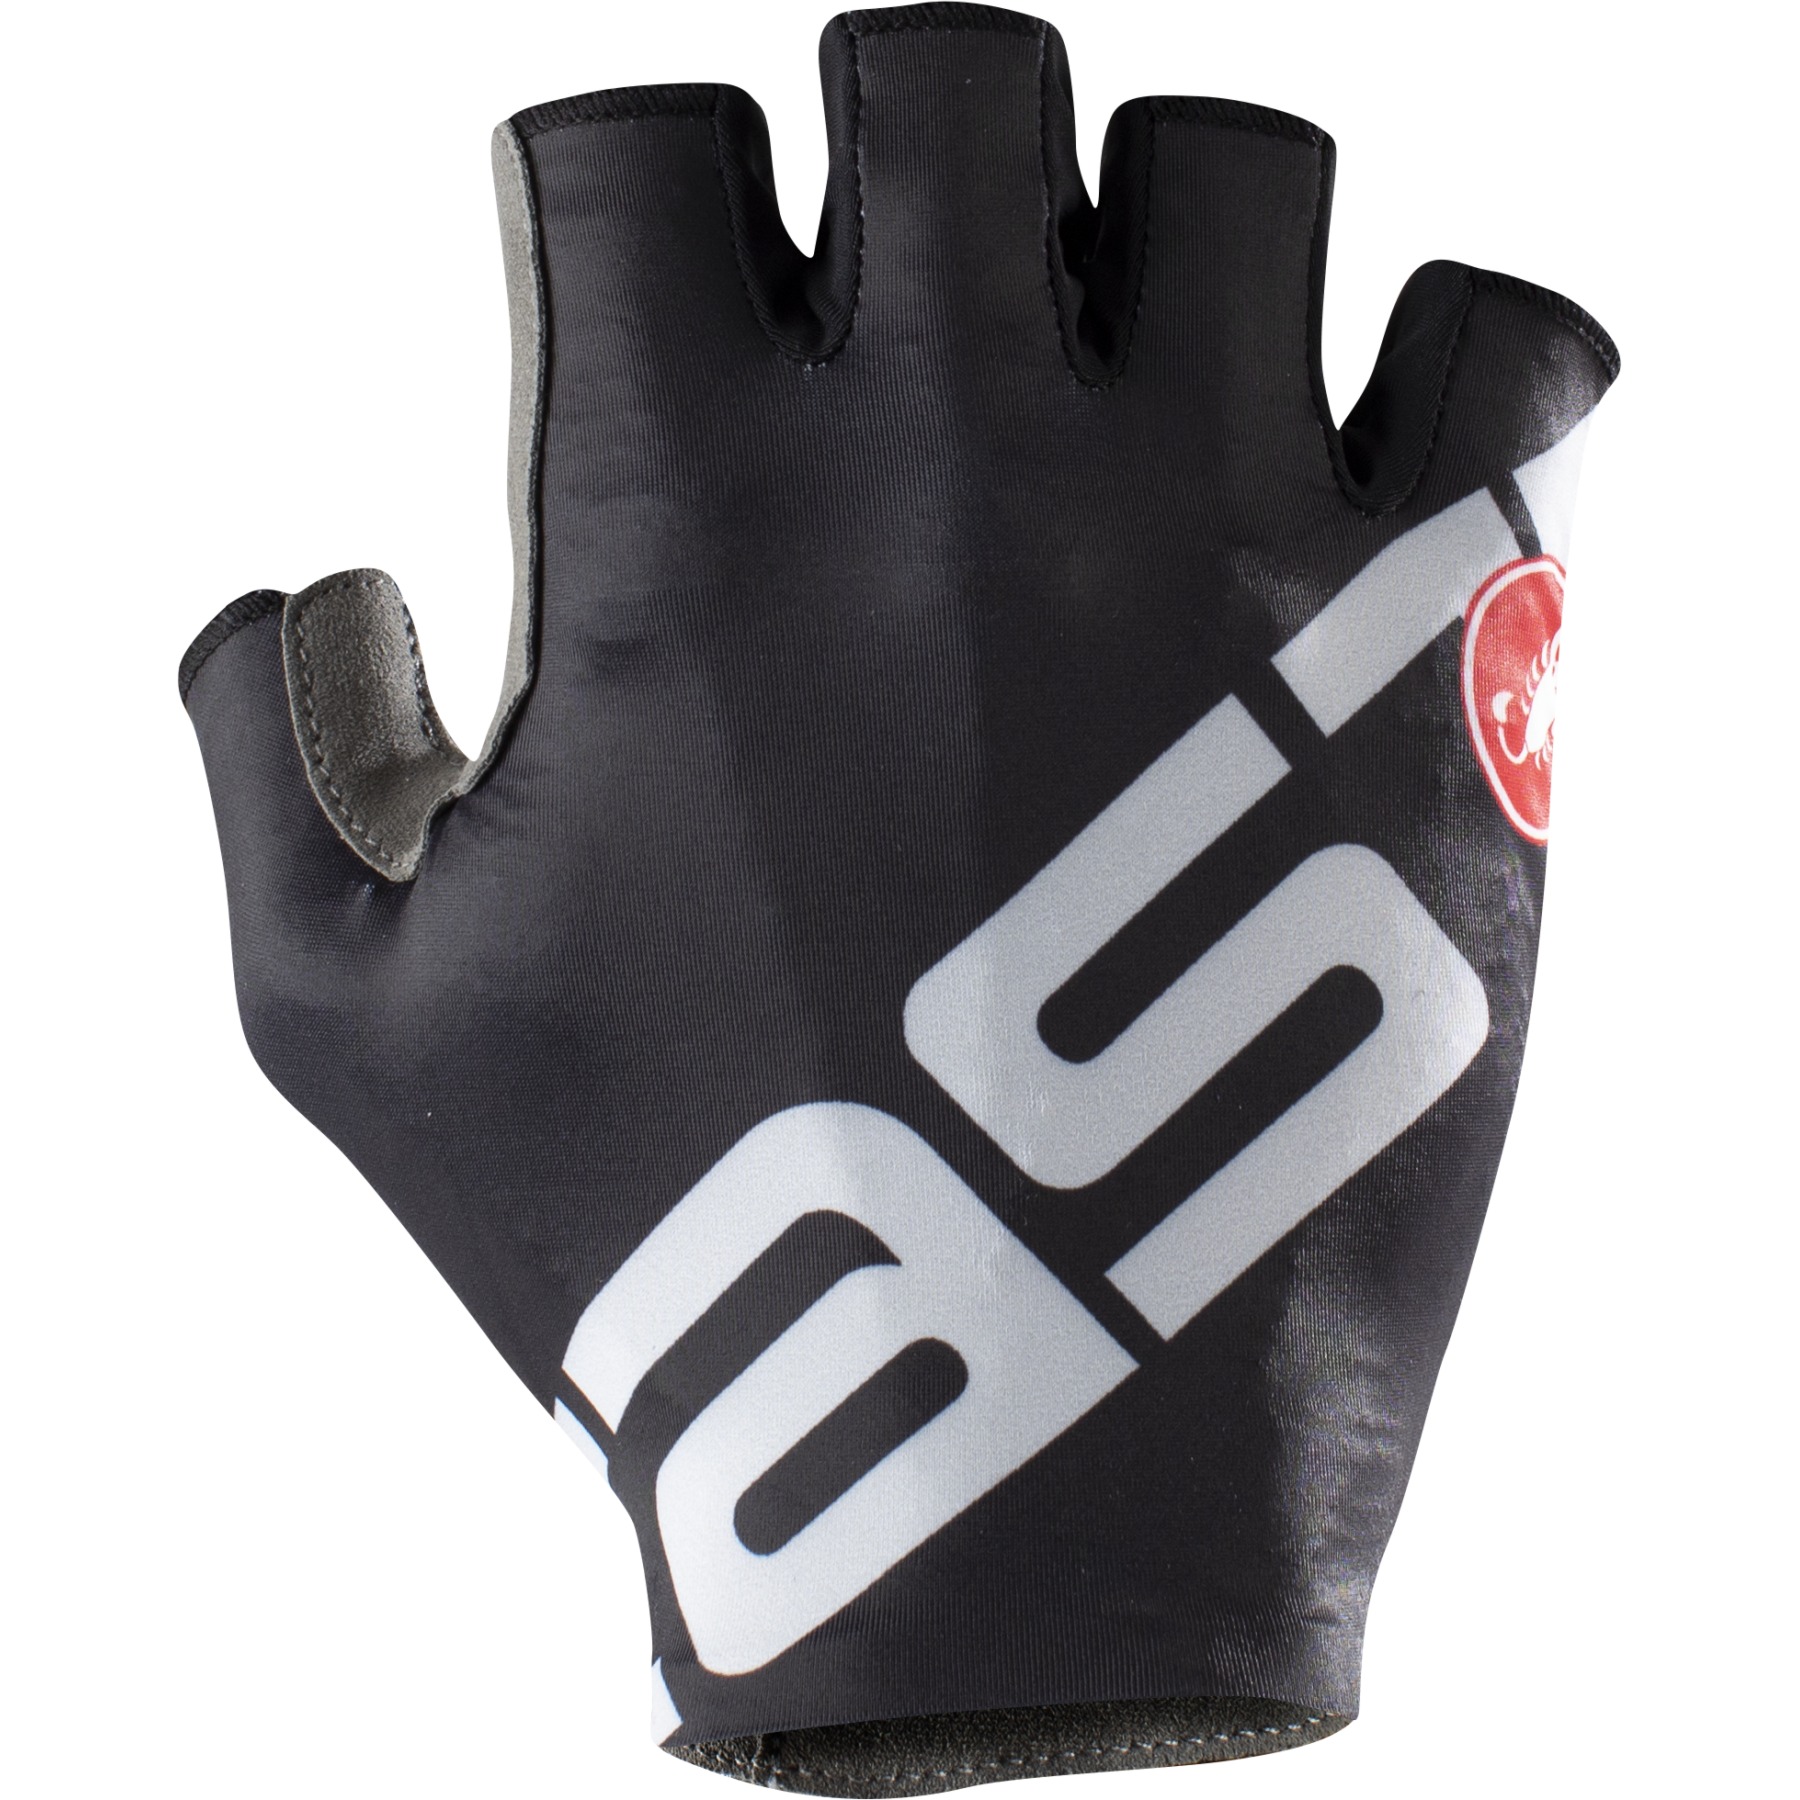 Produktbild von Castelli Competizione 2 Kurzfinger Handschuhe - light black/silver 085